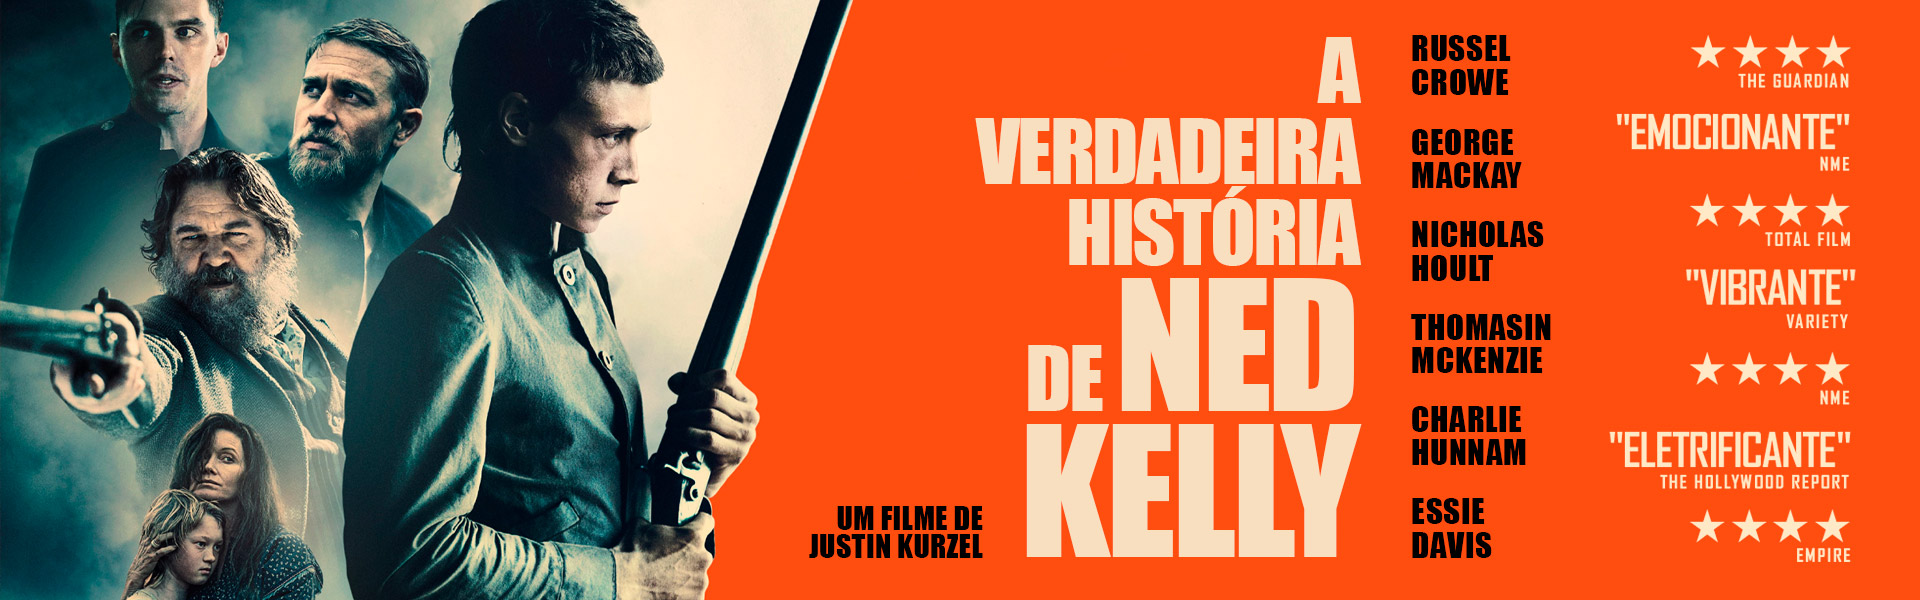 A Verdadeira História de Ned Kelly